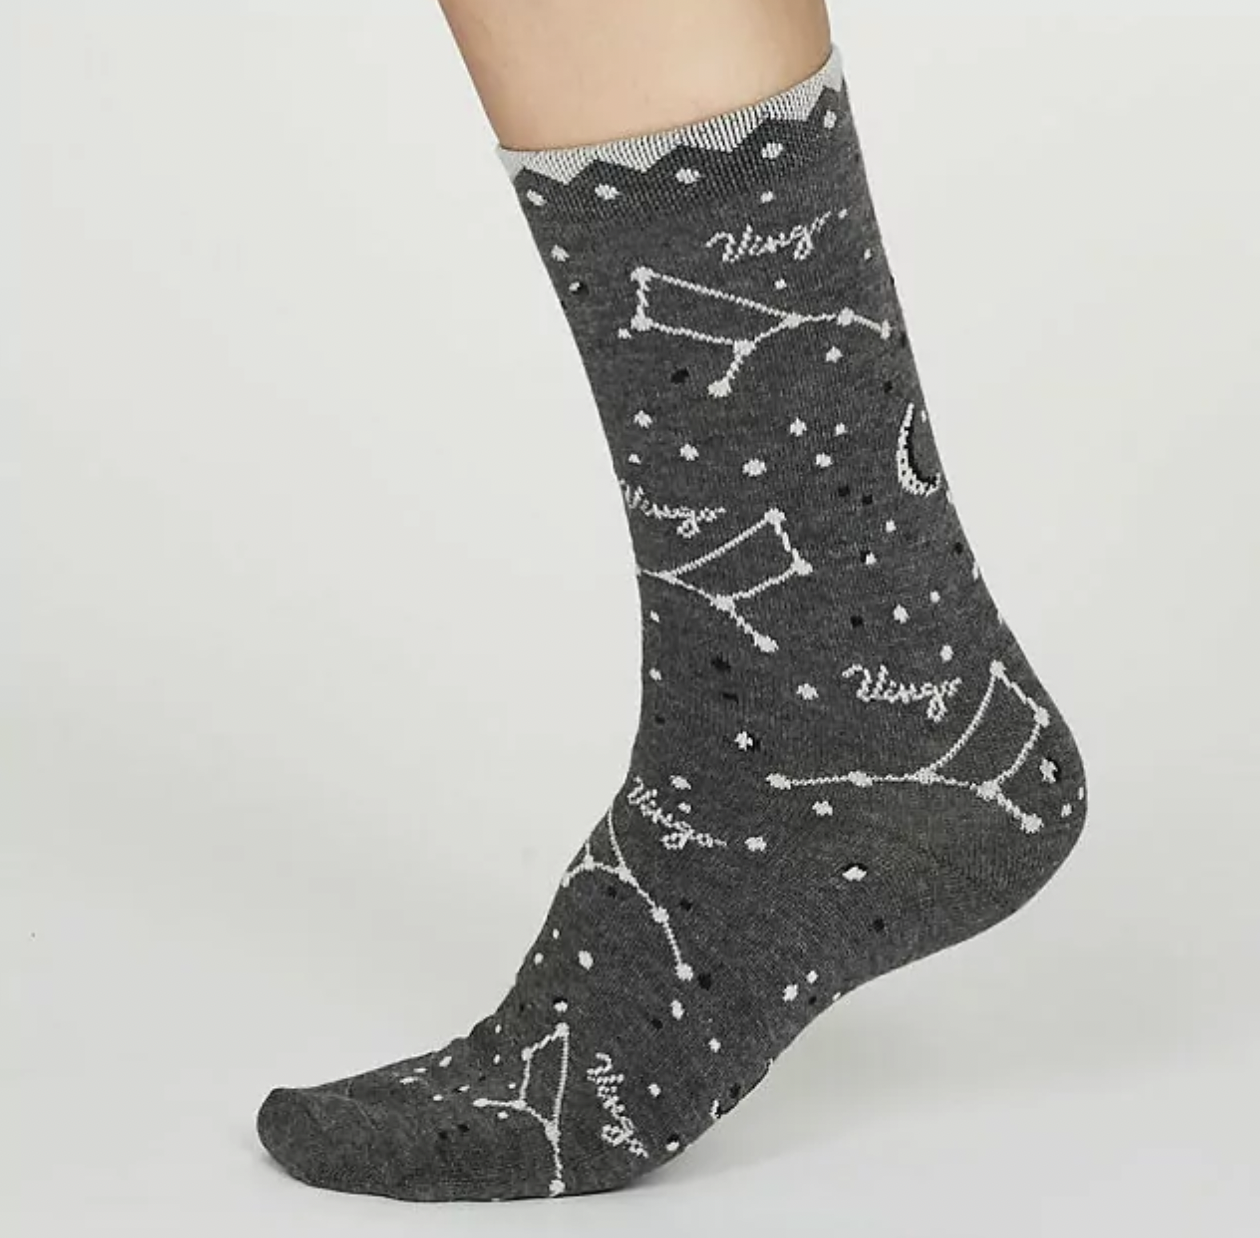 virgo-man-gifts-socks